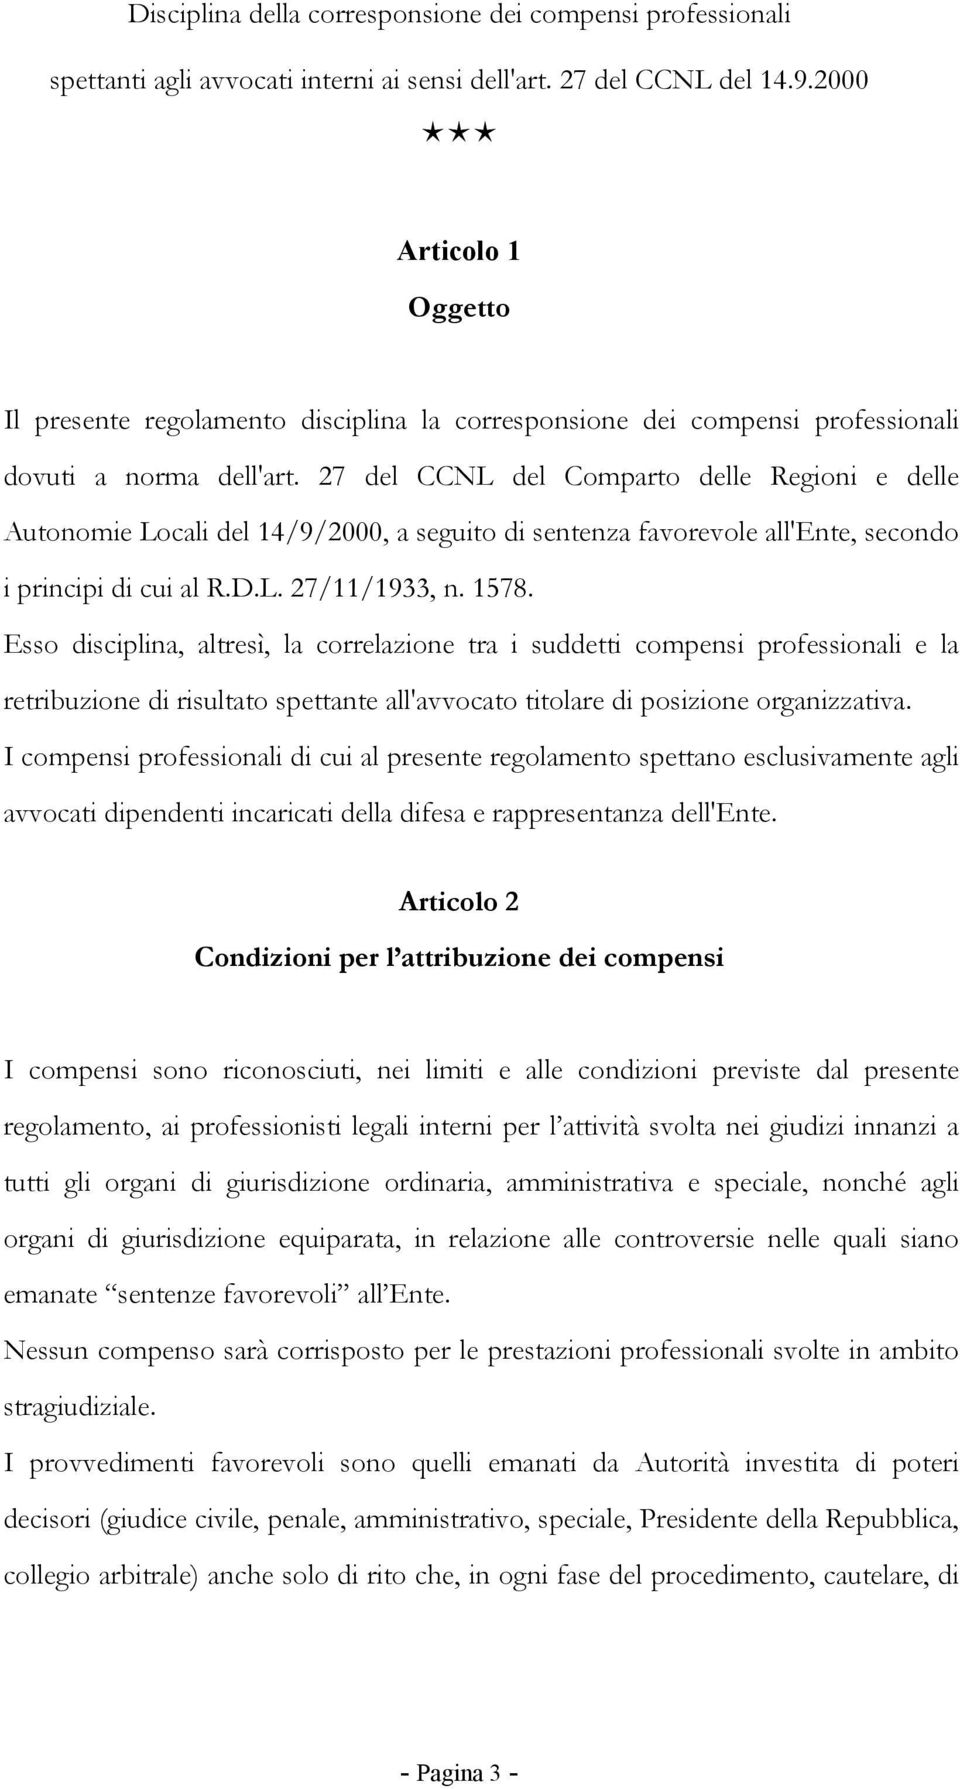 27 del CCNL del Comparto delle Regioni e delle Autonomie Locali del 14/9/2000, a seguito di sentenza favorevole all'ente, secondo i principi di cui al R.D.L. 27/11/1933, n. 1578.